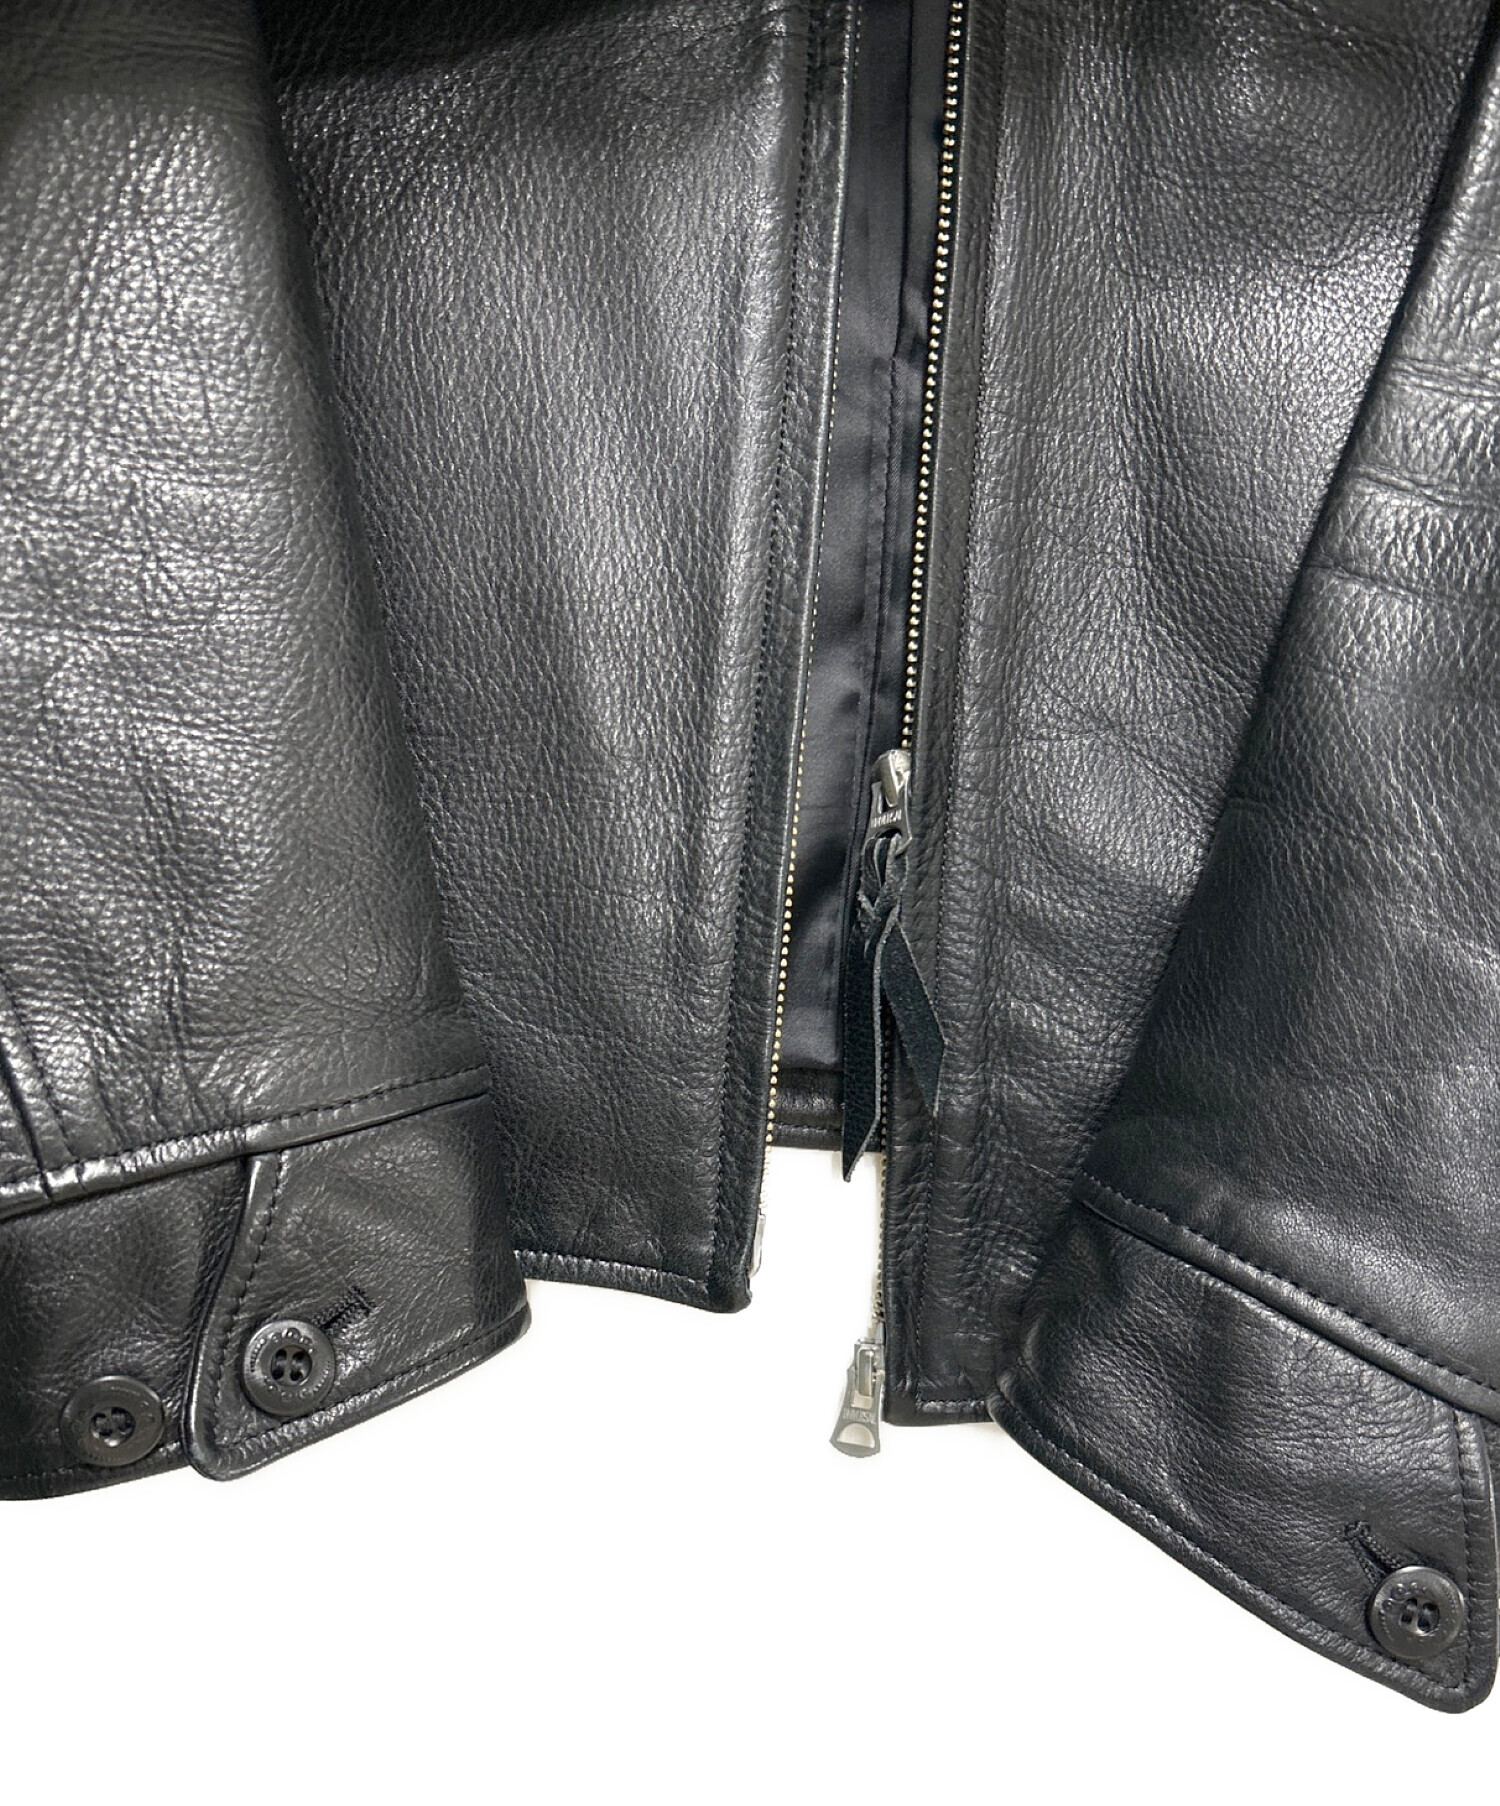 中古・古着通販】Y'2 leather (ワイツーレザー) レザージャケット